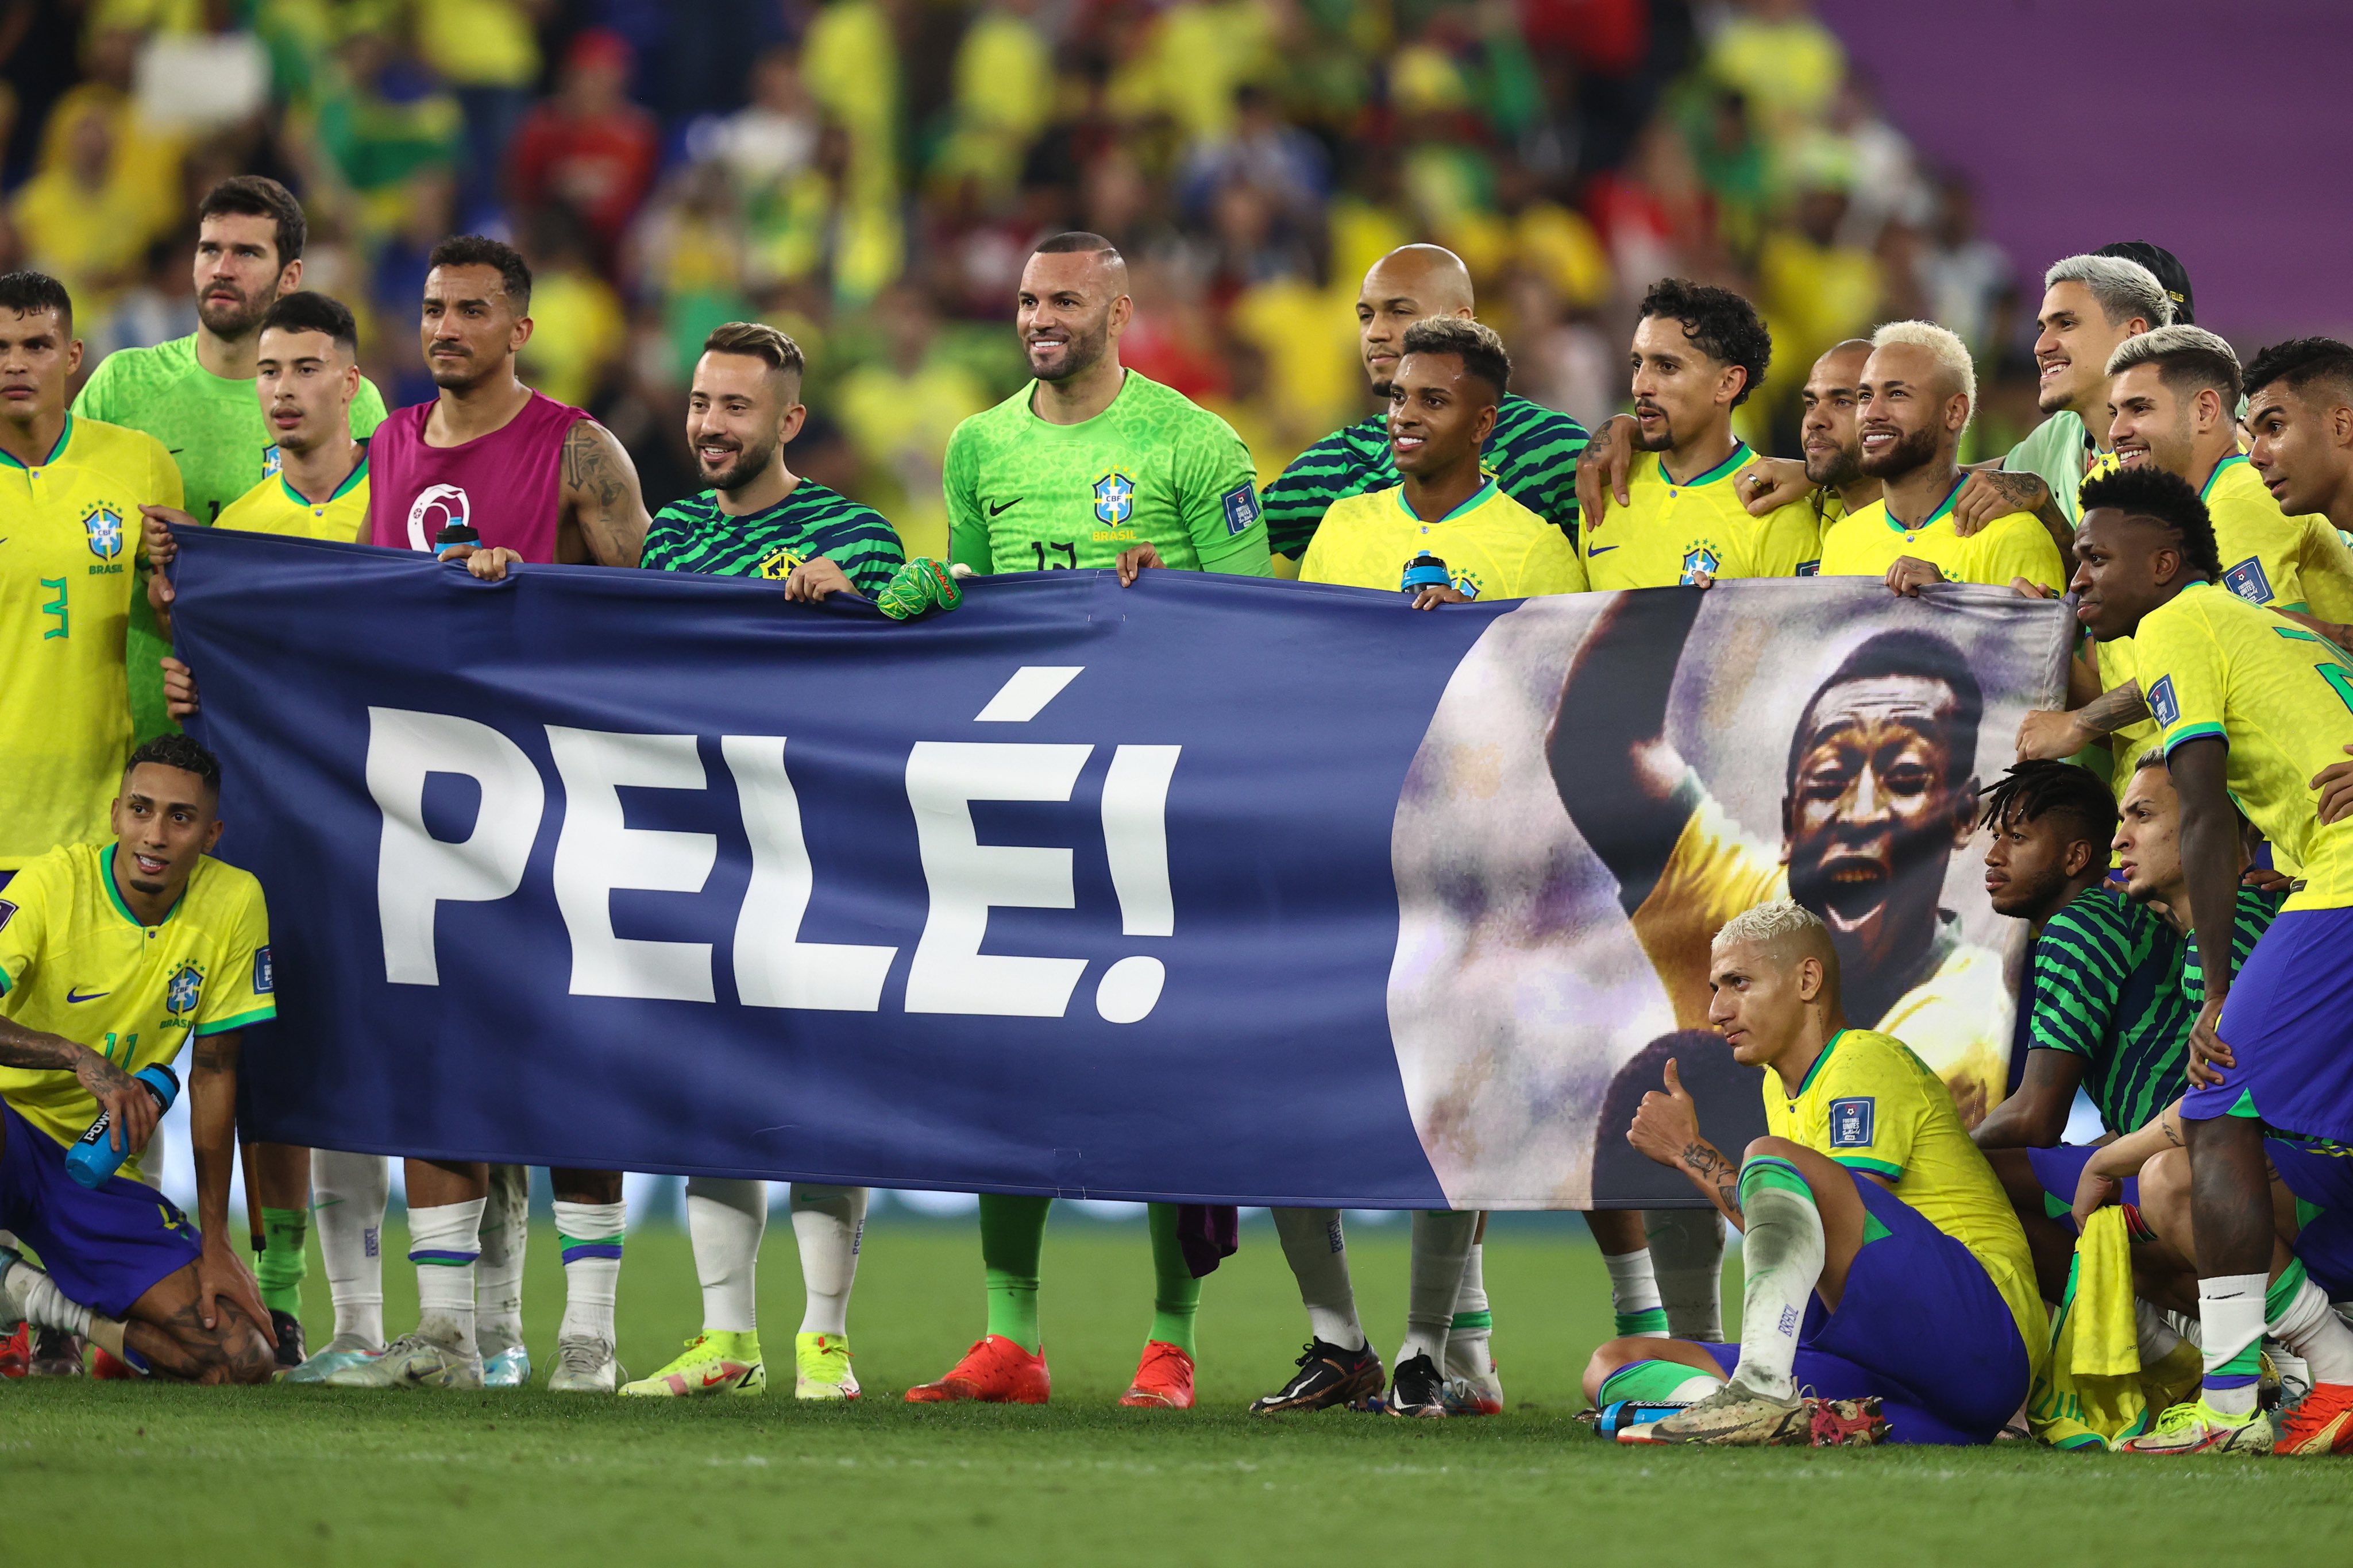 Pembaruan Kesehatan Pele: Legenda sepak bola Brasil Pele 'semakin membaik', Pele di rumah sakit, Pembaruan Kesehatan Terbaru Pele, Peningkatan Kesehatan Pele